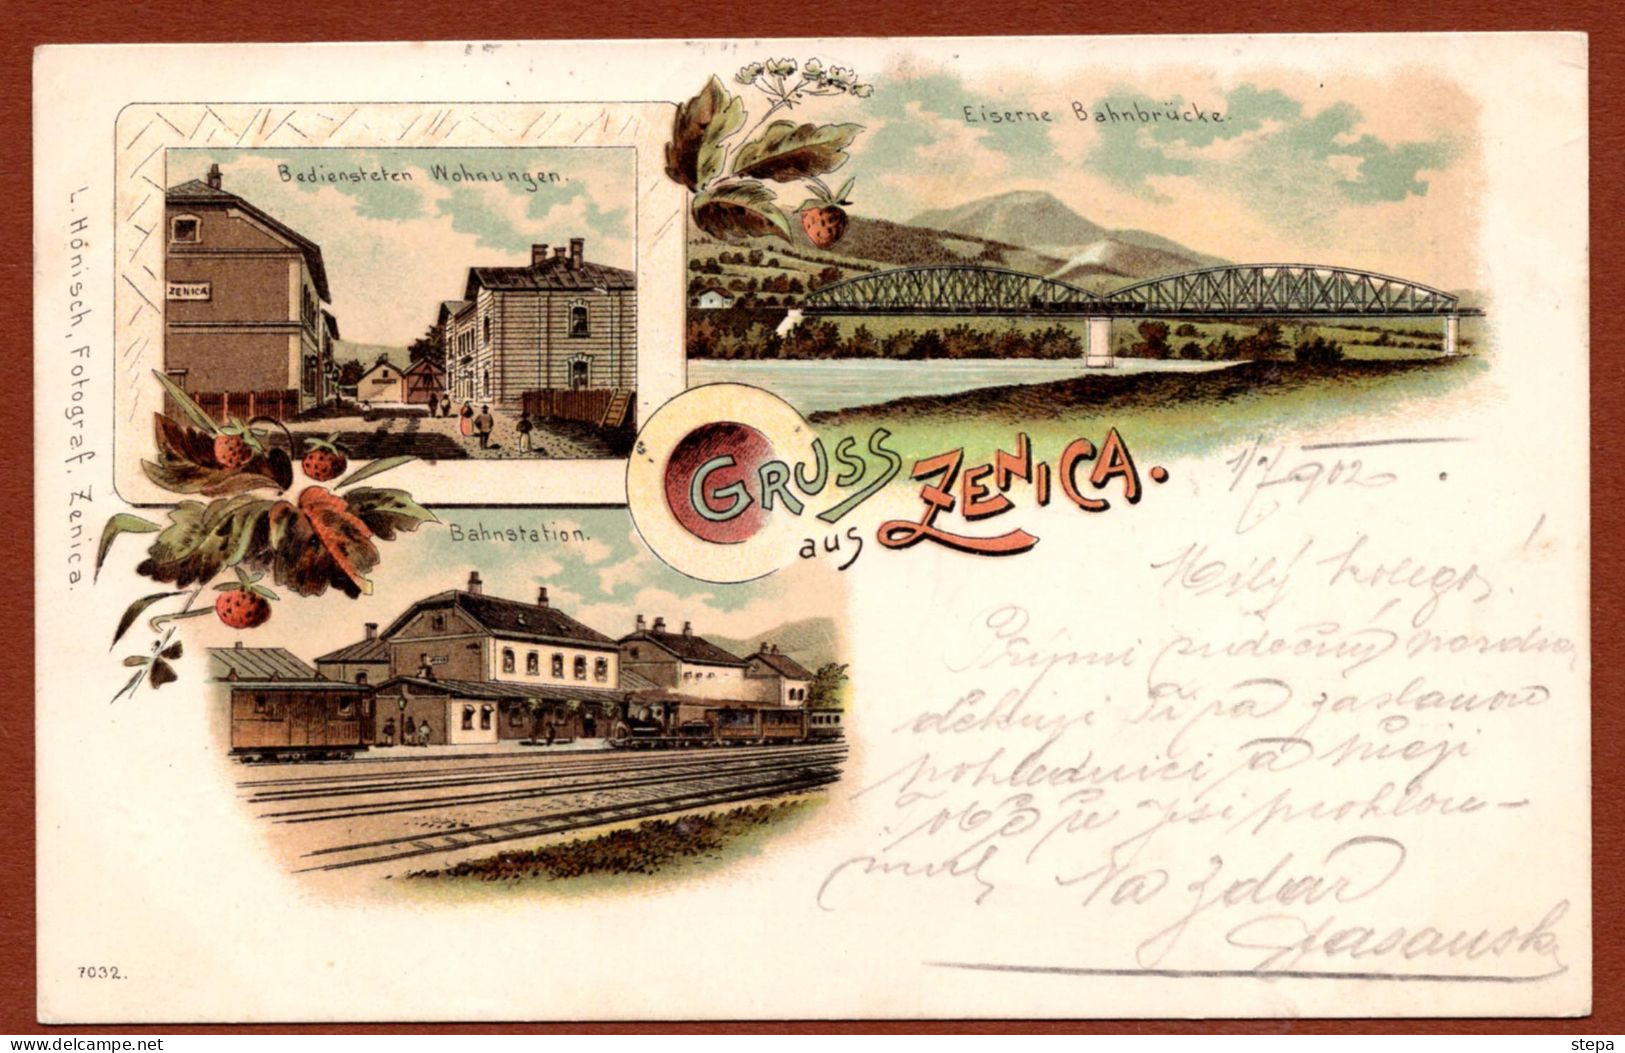 BOSNIA-AUSTRIA, ZENICA RAILWAY STATION & BRIDGE, LITHOGRAPHY 1902 RARE!!!!! - Bosnien-Herzegowina